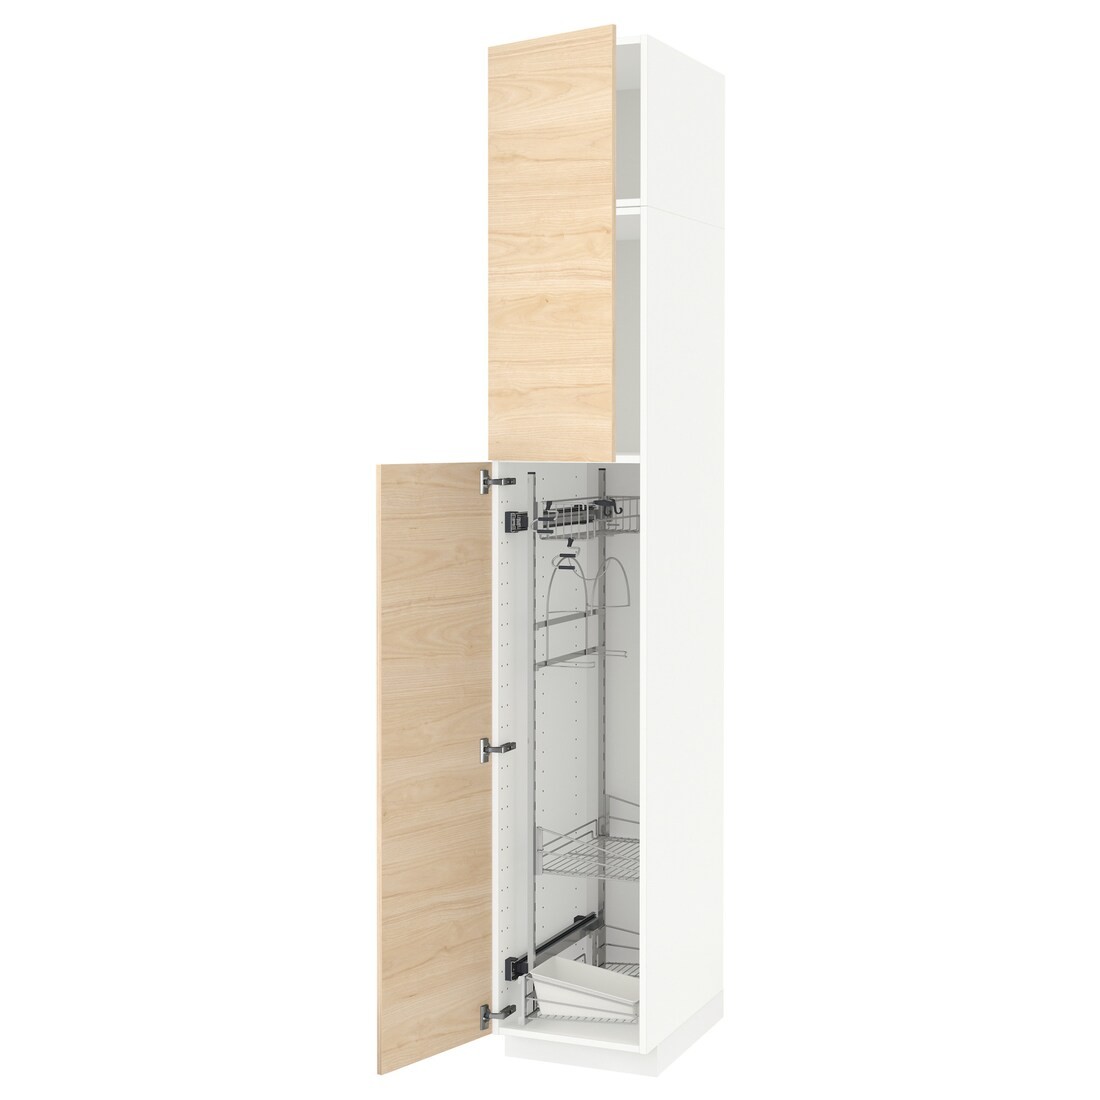 METOD МЕТОД Высокий шкаф с отделением для аксессуаров для уборки, белый / Askersund узор светлый ясень, 40x60x240 см